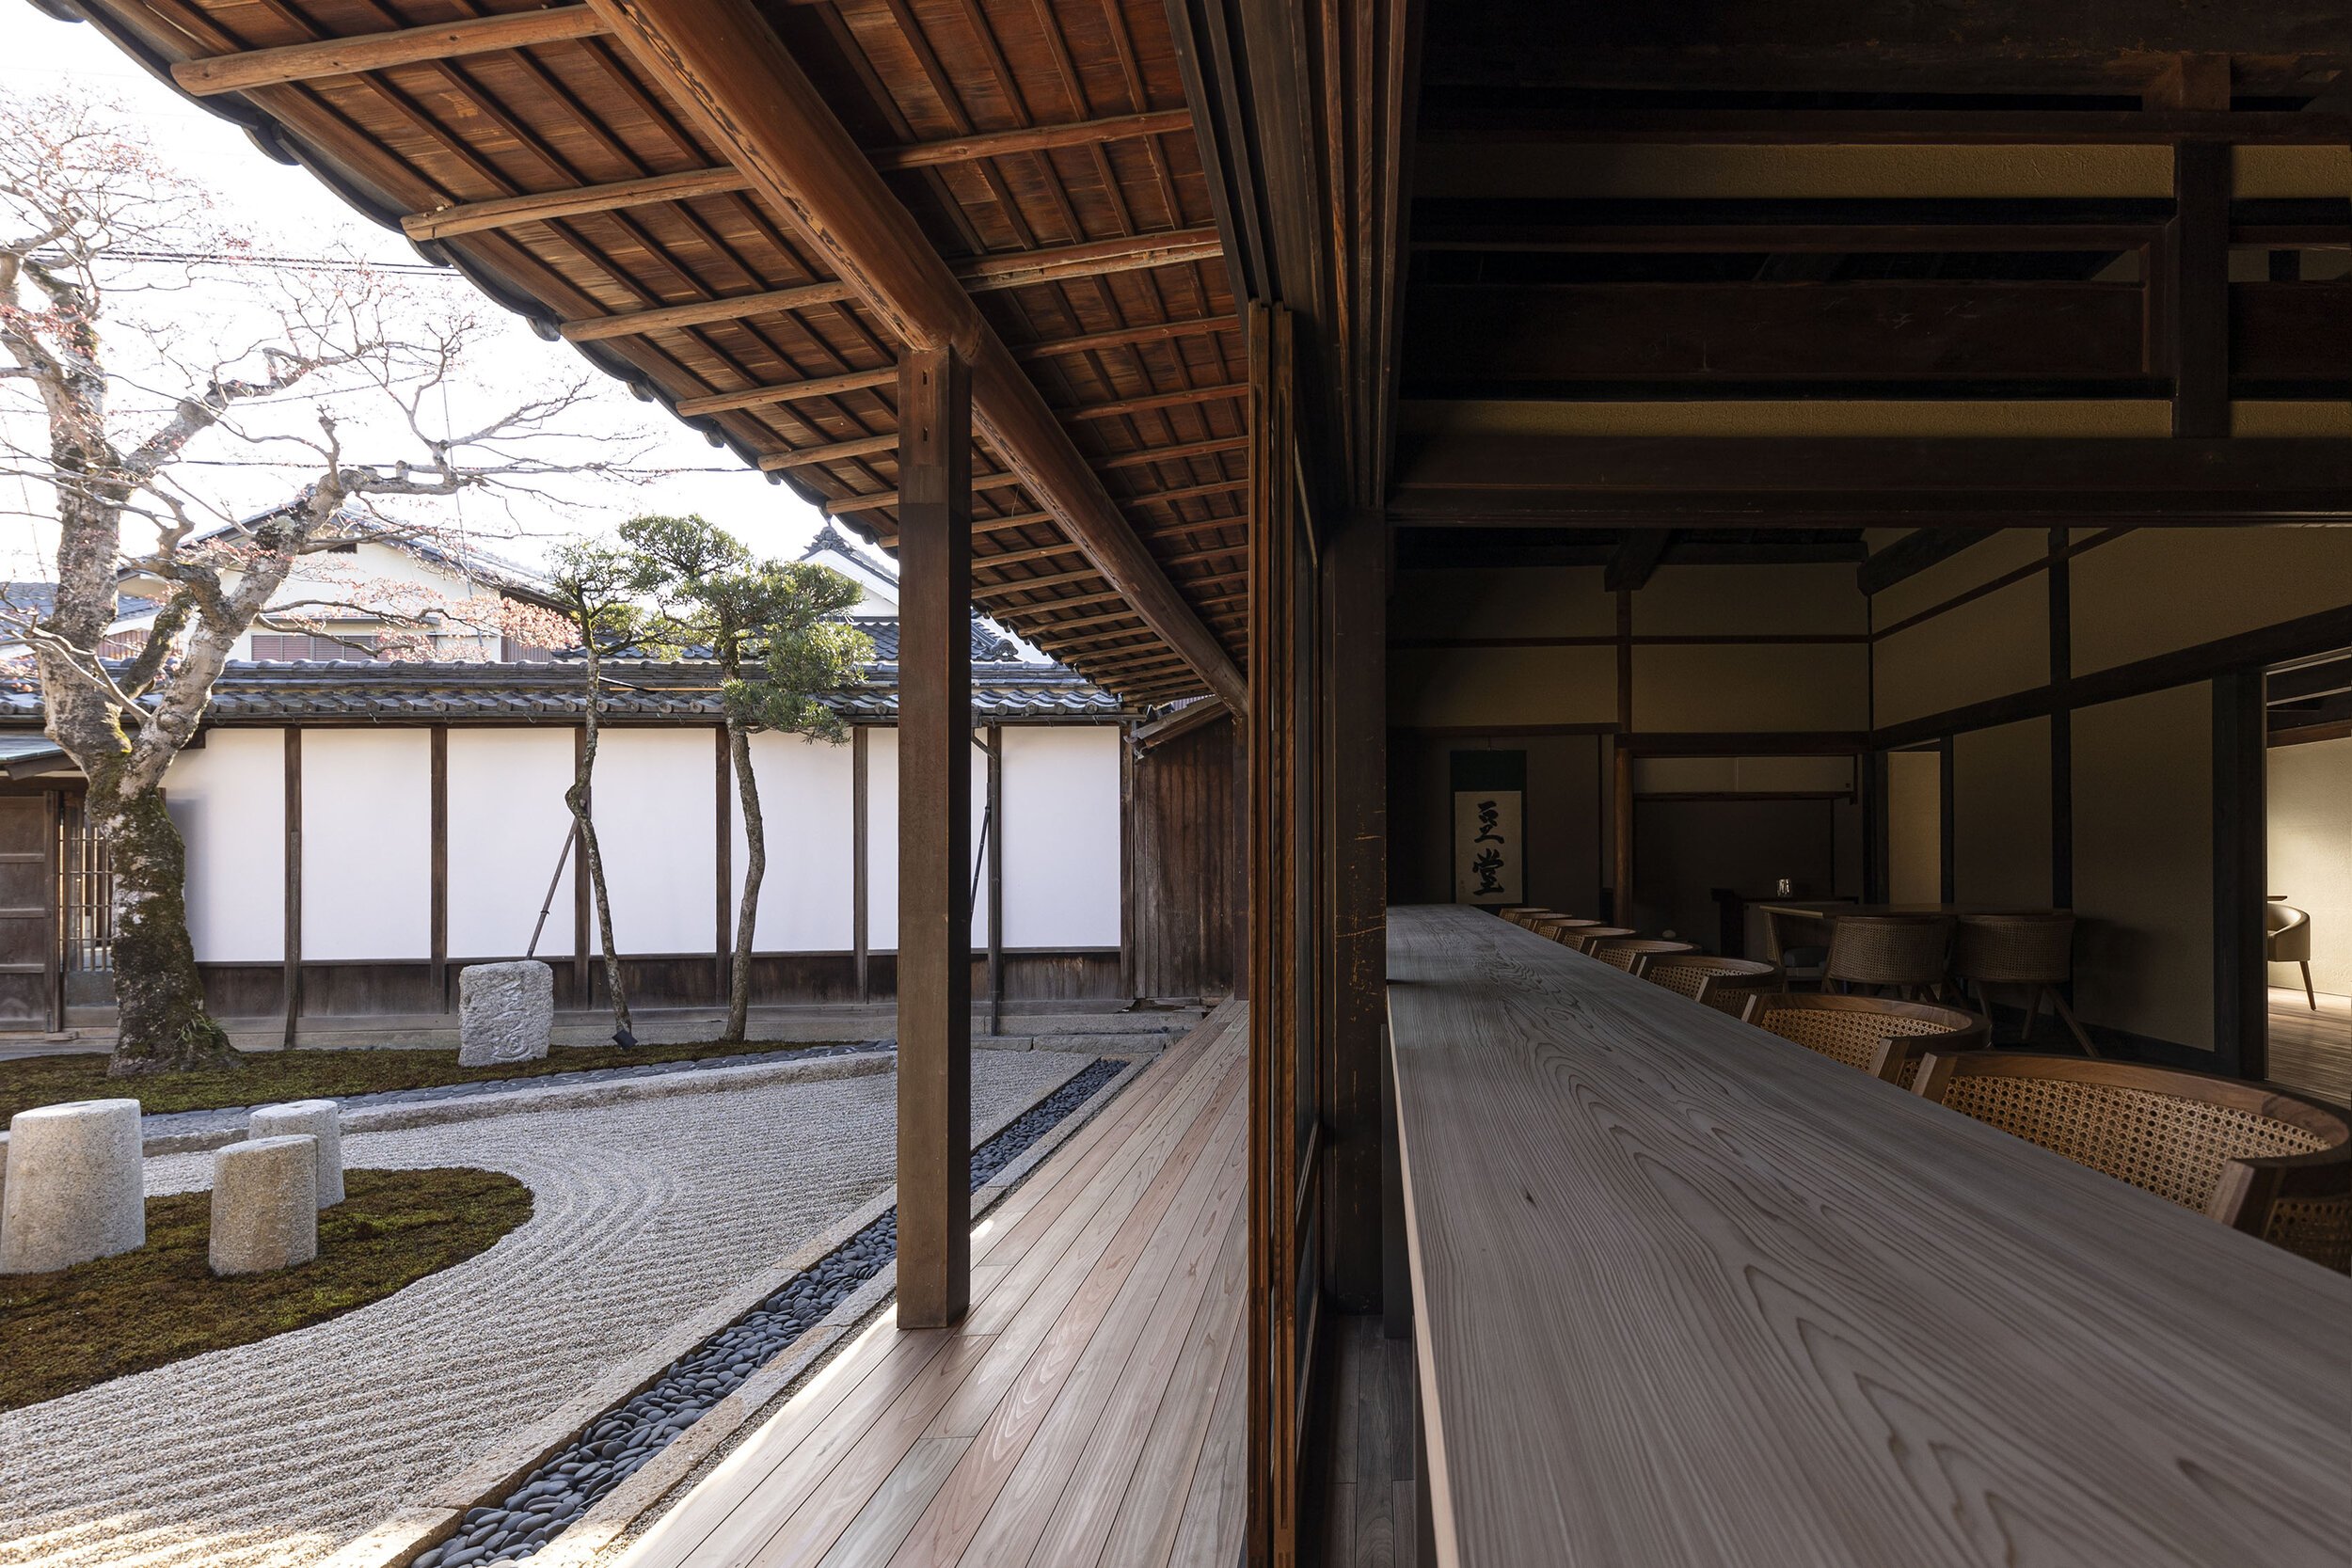  杉本博司と榊田倫之が率いる新素材研究所がデザインを手掛けた小田垣商店本店の縁側と庭園 